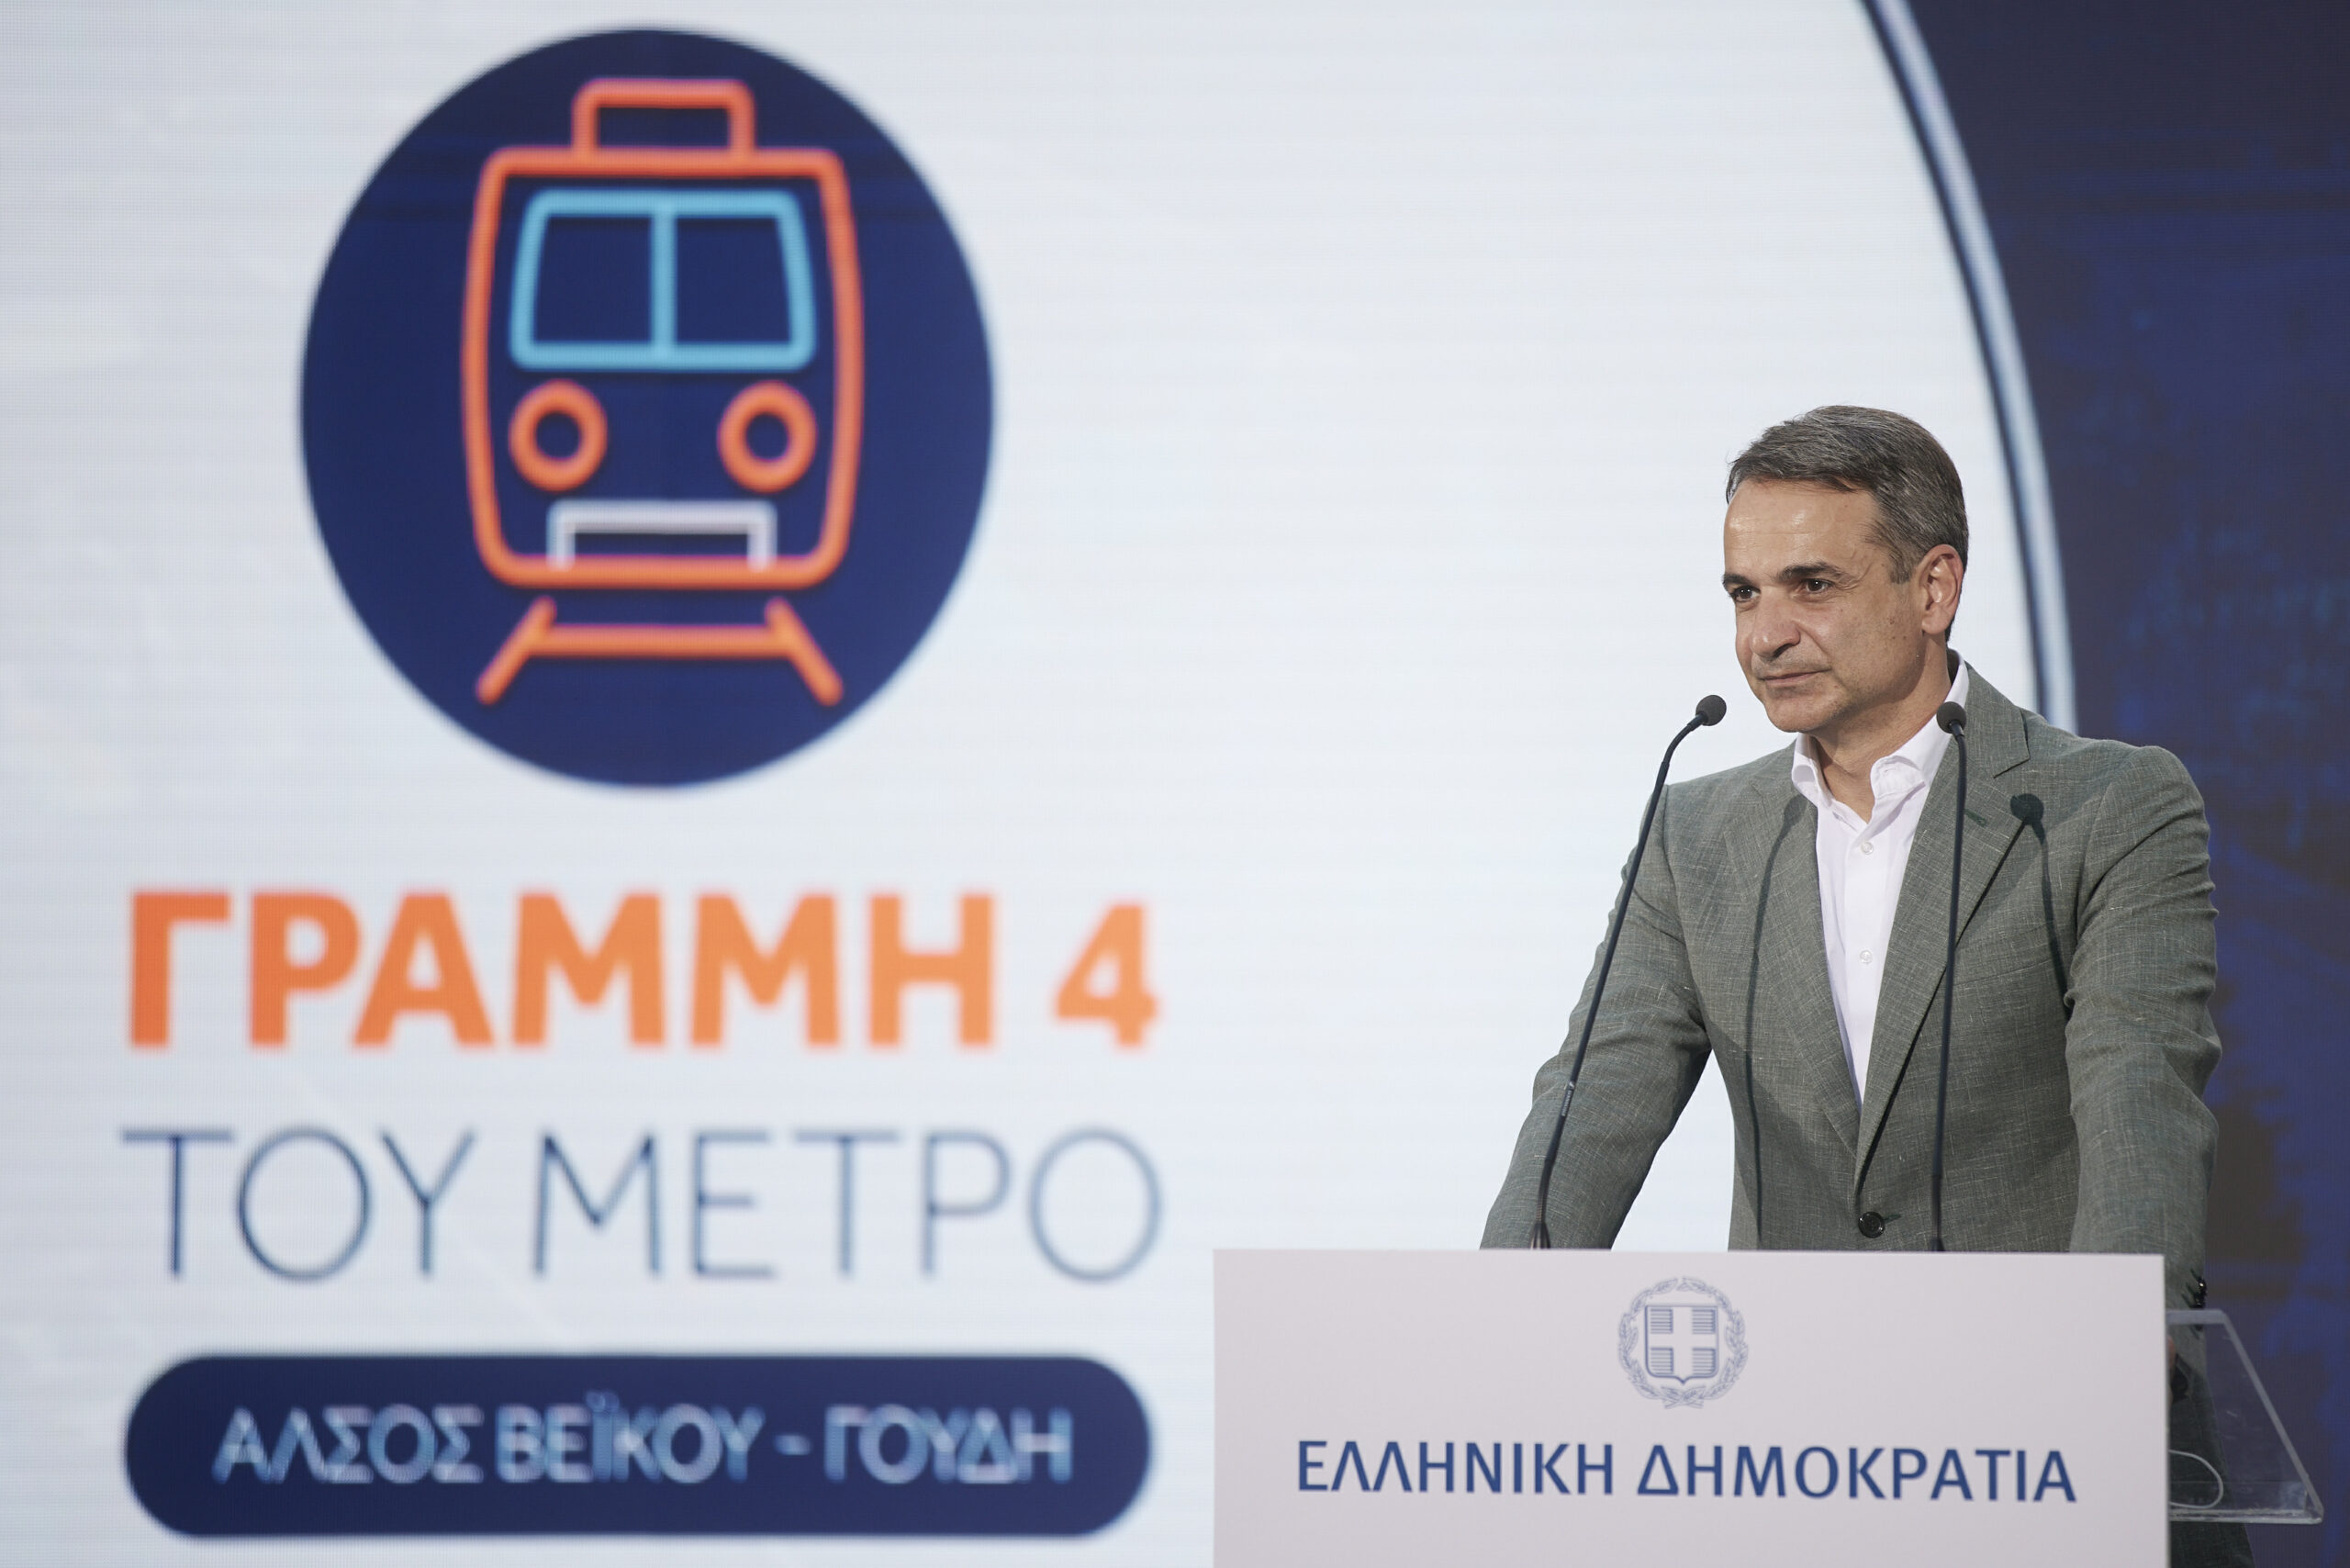 Κυρ. Μητσοτάκης: Η κατασκευή της Γραμμής 4 του Μετρό είναι «το μεγαλύτερο δημόσιο έργο που θα γίνει στη χώρα μας τα επόμενα χρόνια»